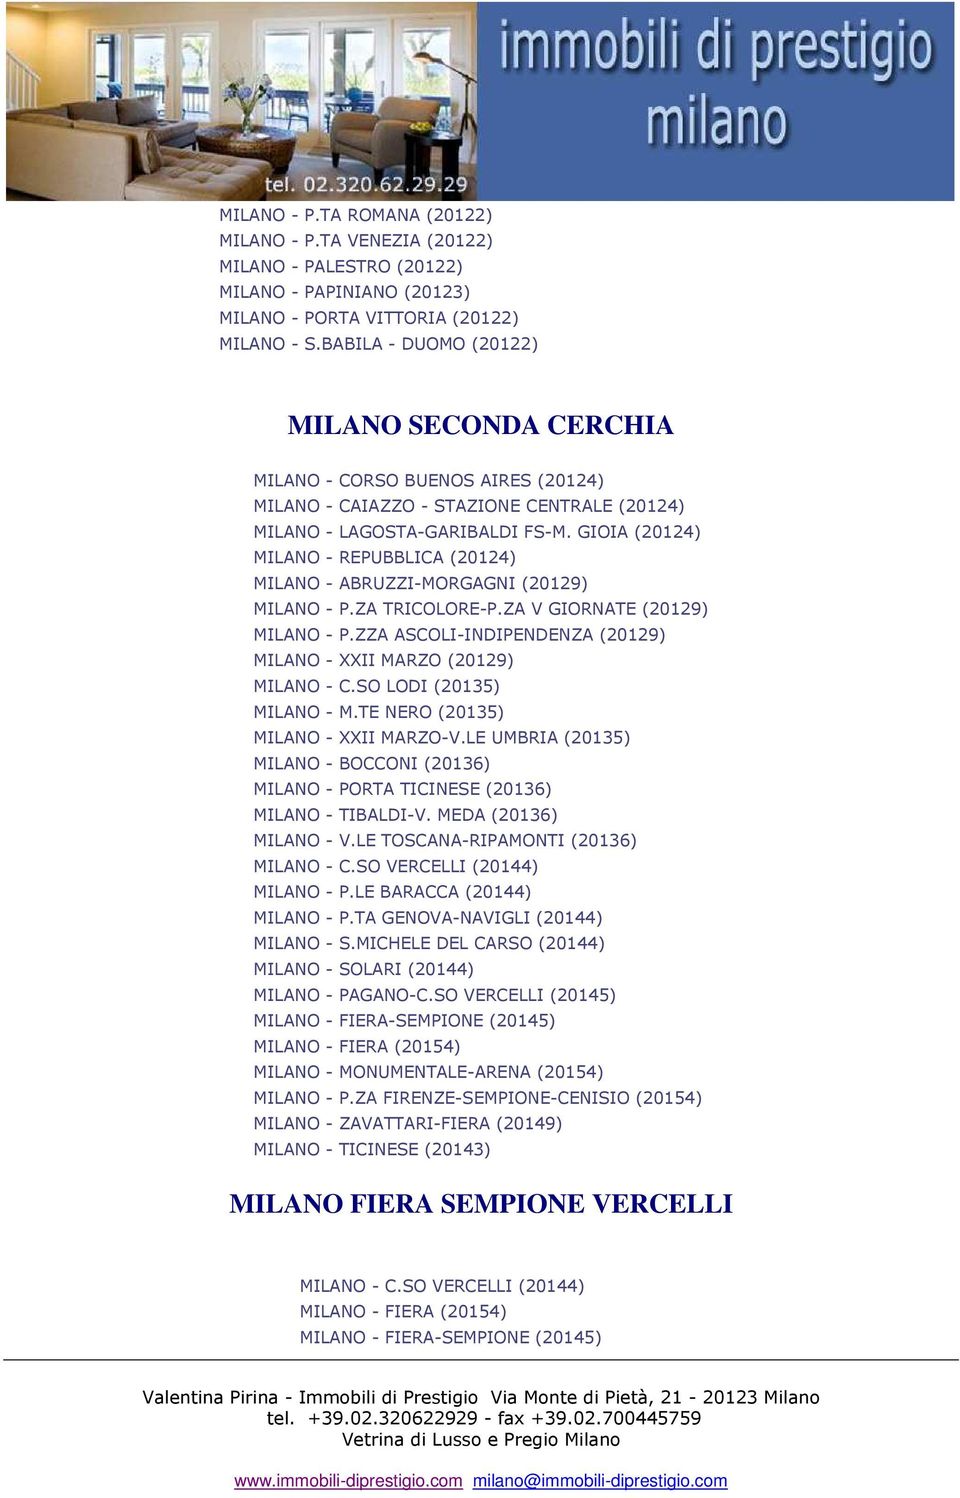 GIOIA (20124) MILANO - REPUBBLICA (20124) MILANO - ABRUZZI-MORGAGNI (20129) MILANO - P.ZA TRICOLORE-P.ZA V GIORNATE (20129) MILANO - P.